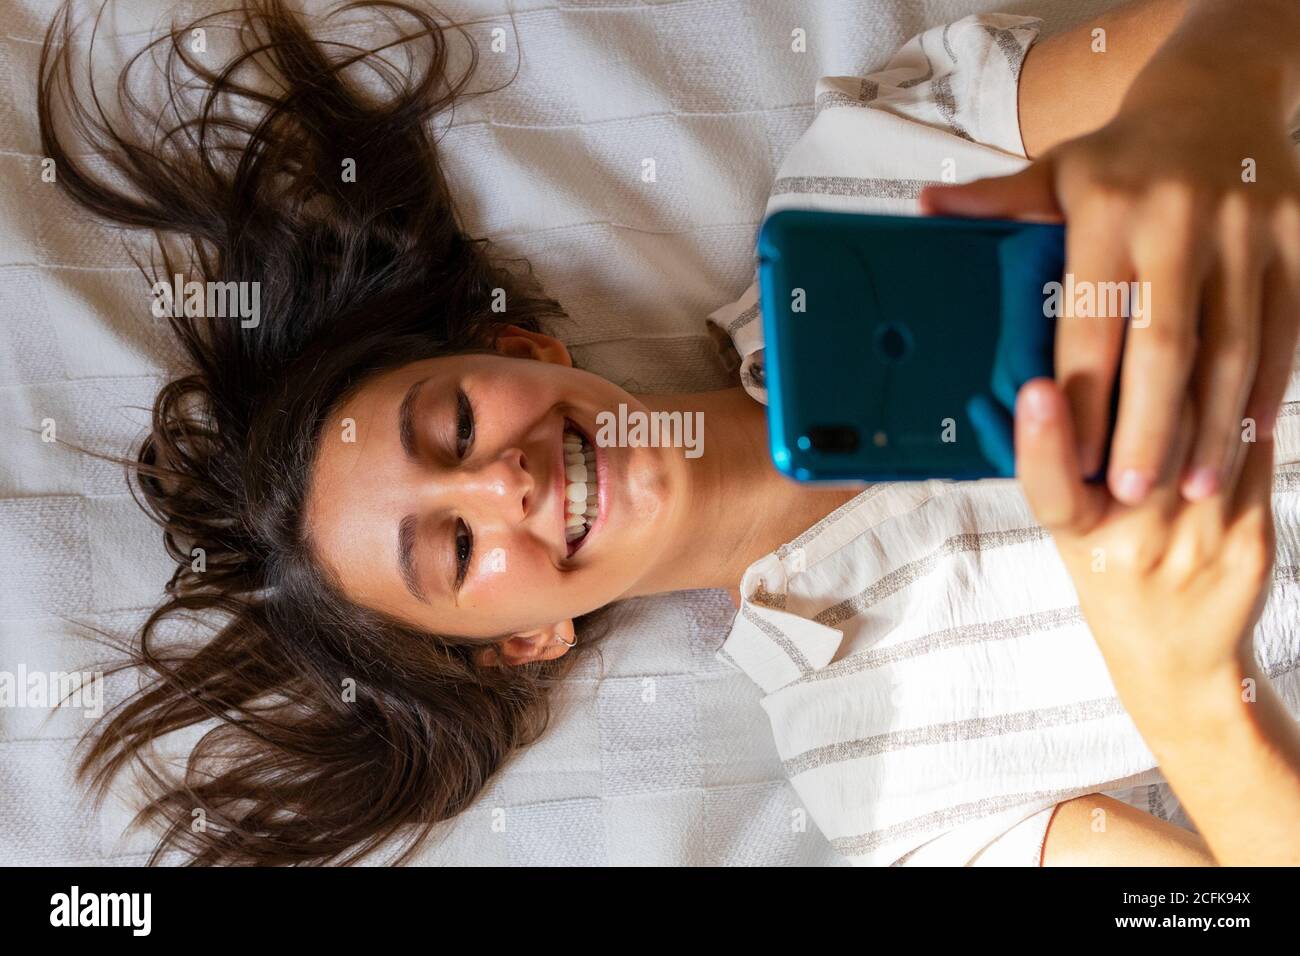 De dessus de la femme enchantée couché sur un lit mou à accueil et lecture de messages sur les réseaux sociaux par téléphone mobile Banque D'Images